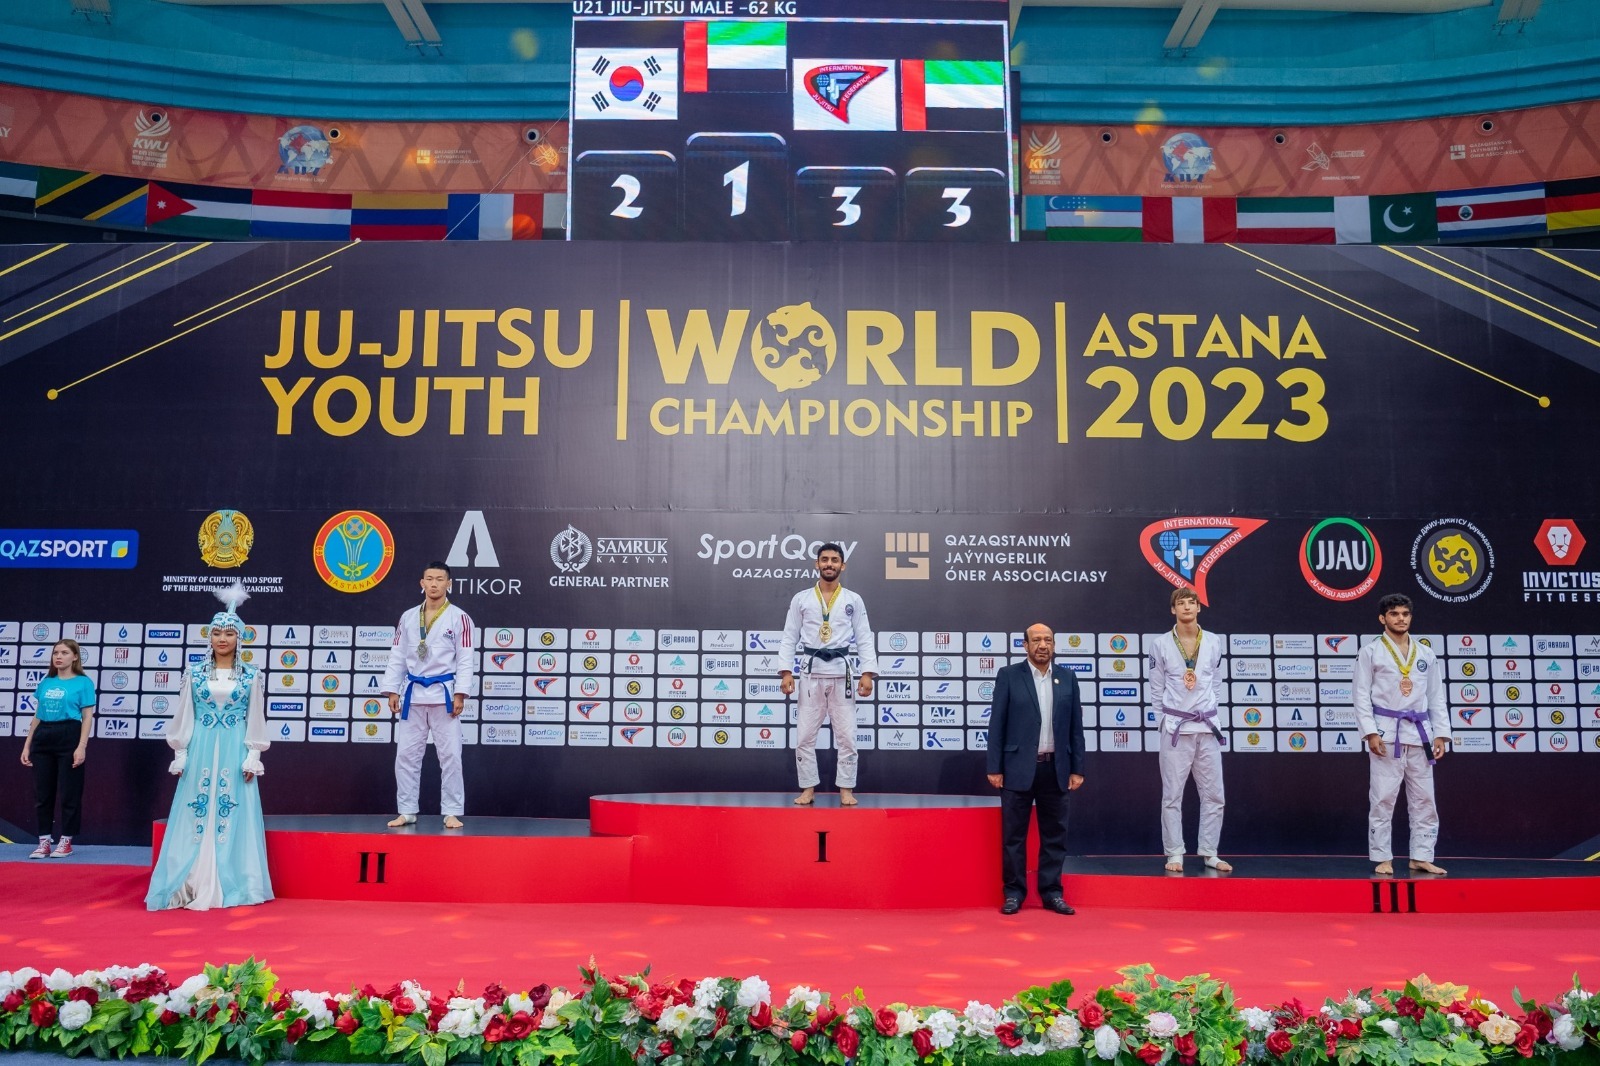 جوجيتسو الإمارات يتصدر الترتيب العام في ختام بطولة العالم بكازاخستان